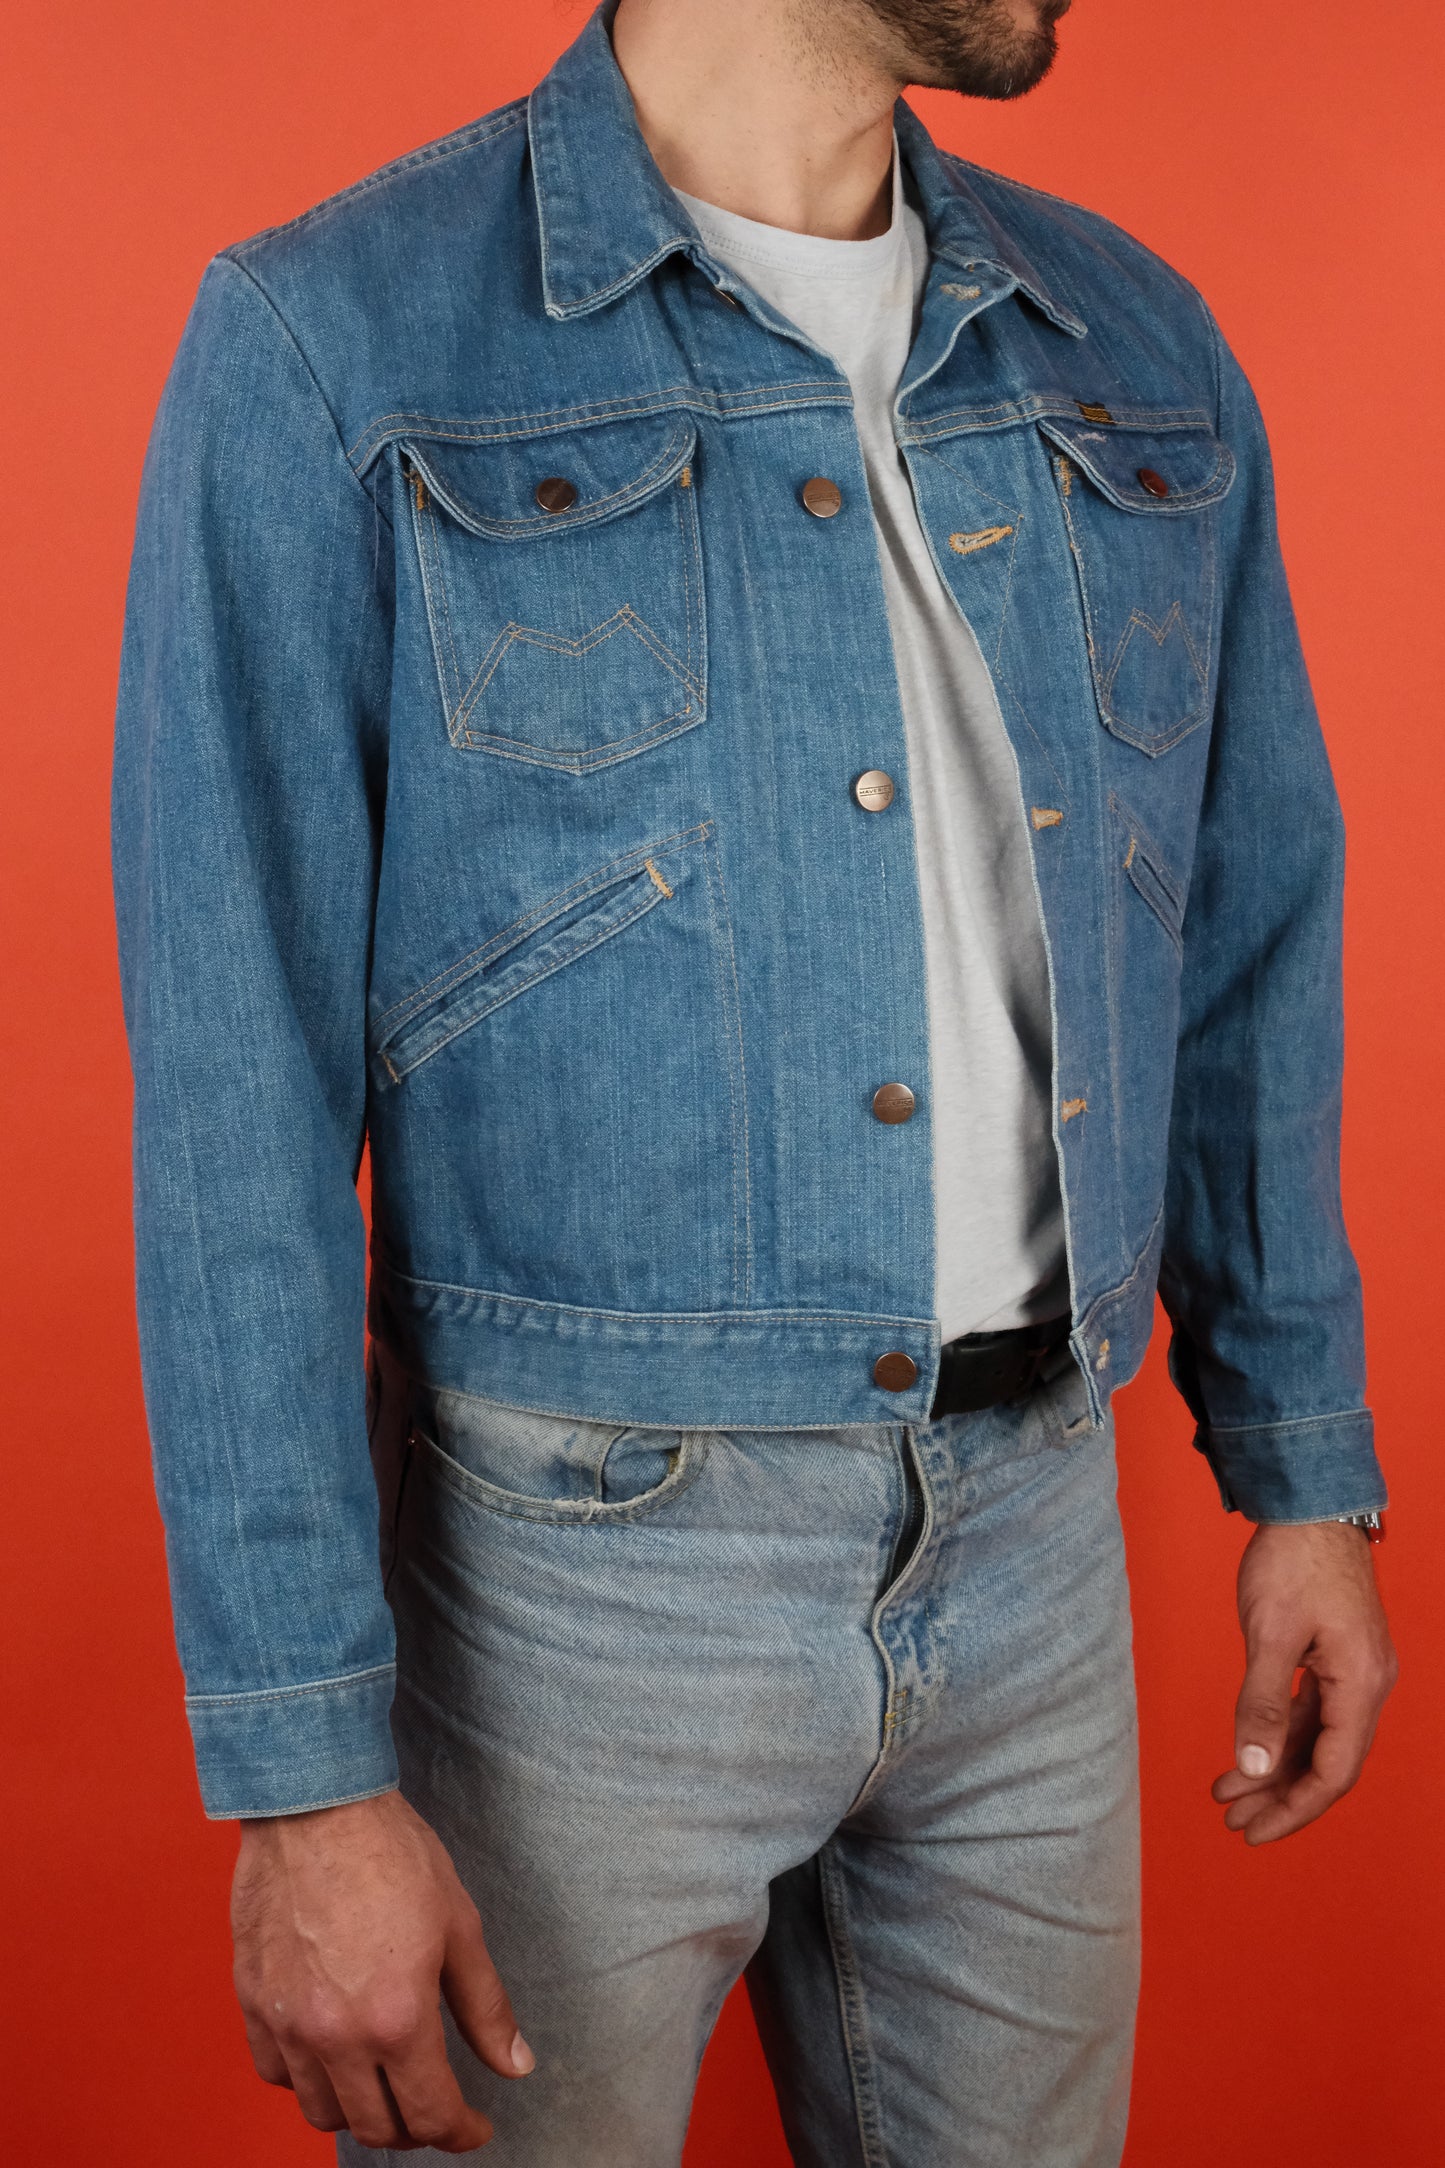 Maverick Blue Bele Denim Jacket 60s - vintage clothing clochard92.com